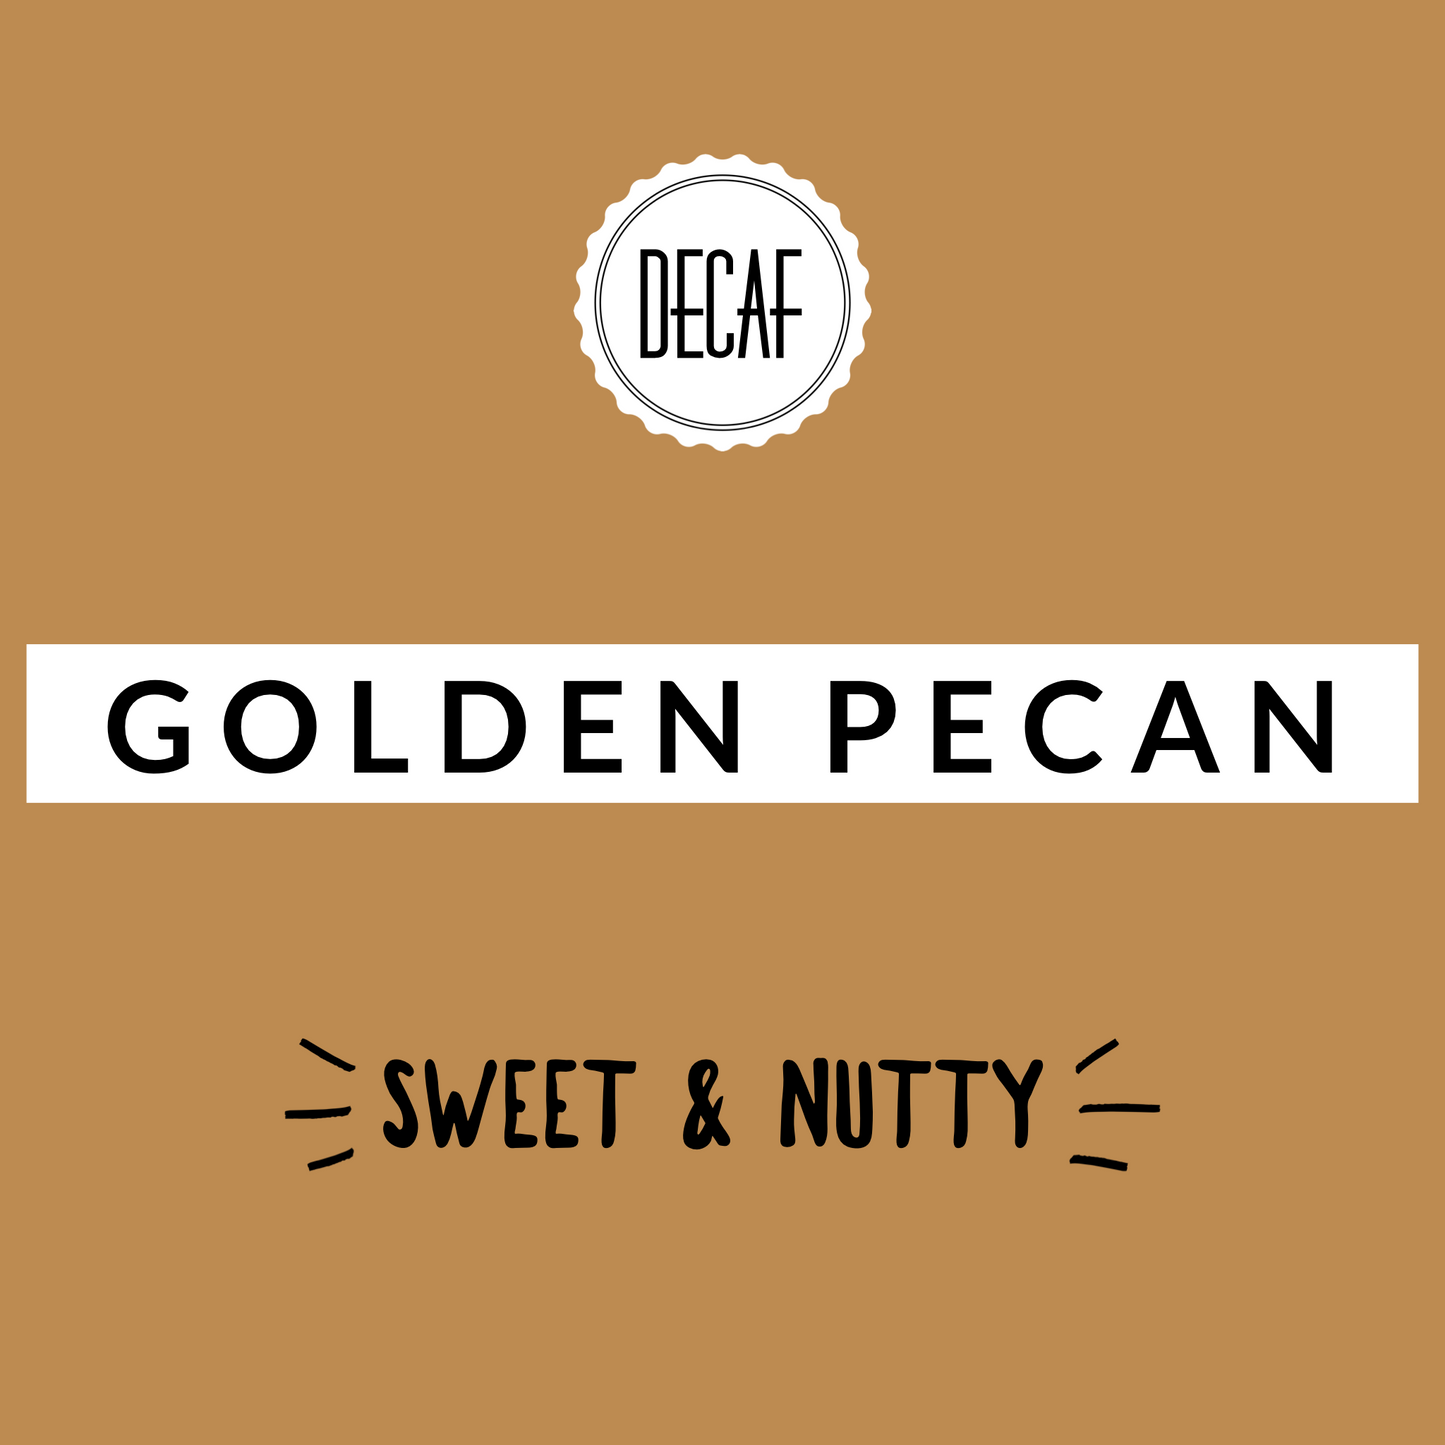 Golden Pecan Decaf